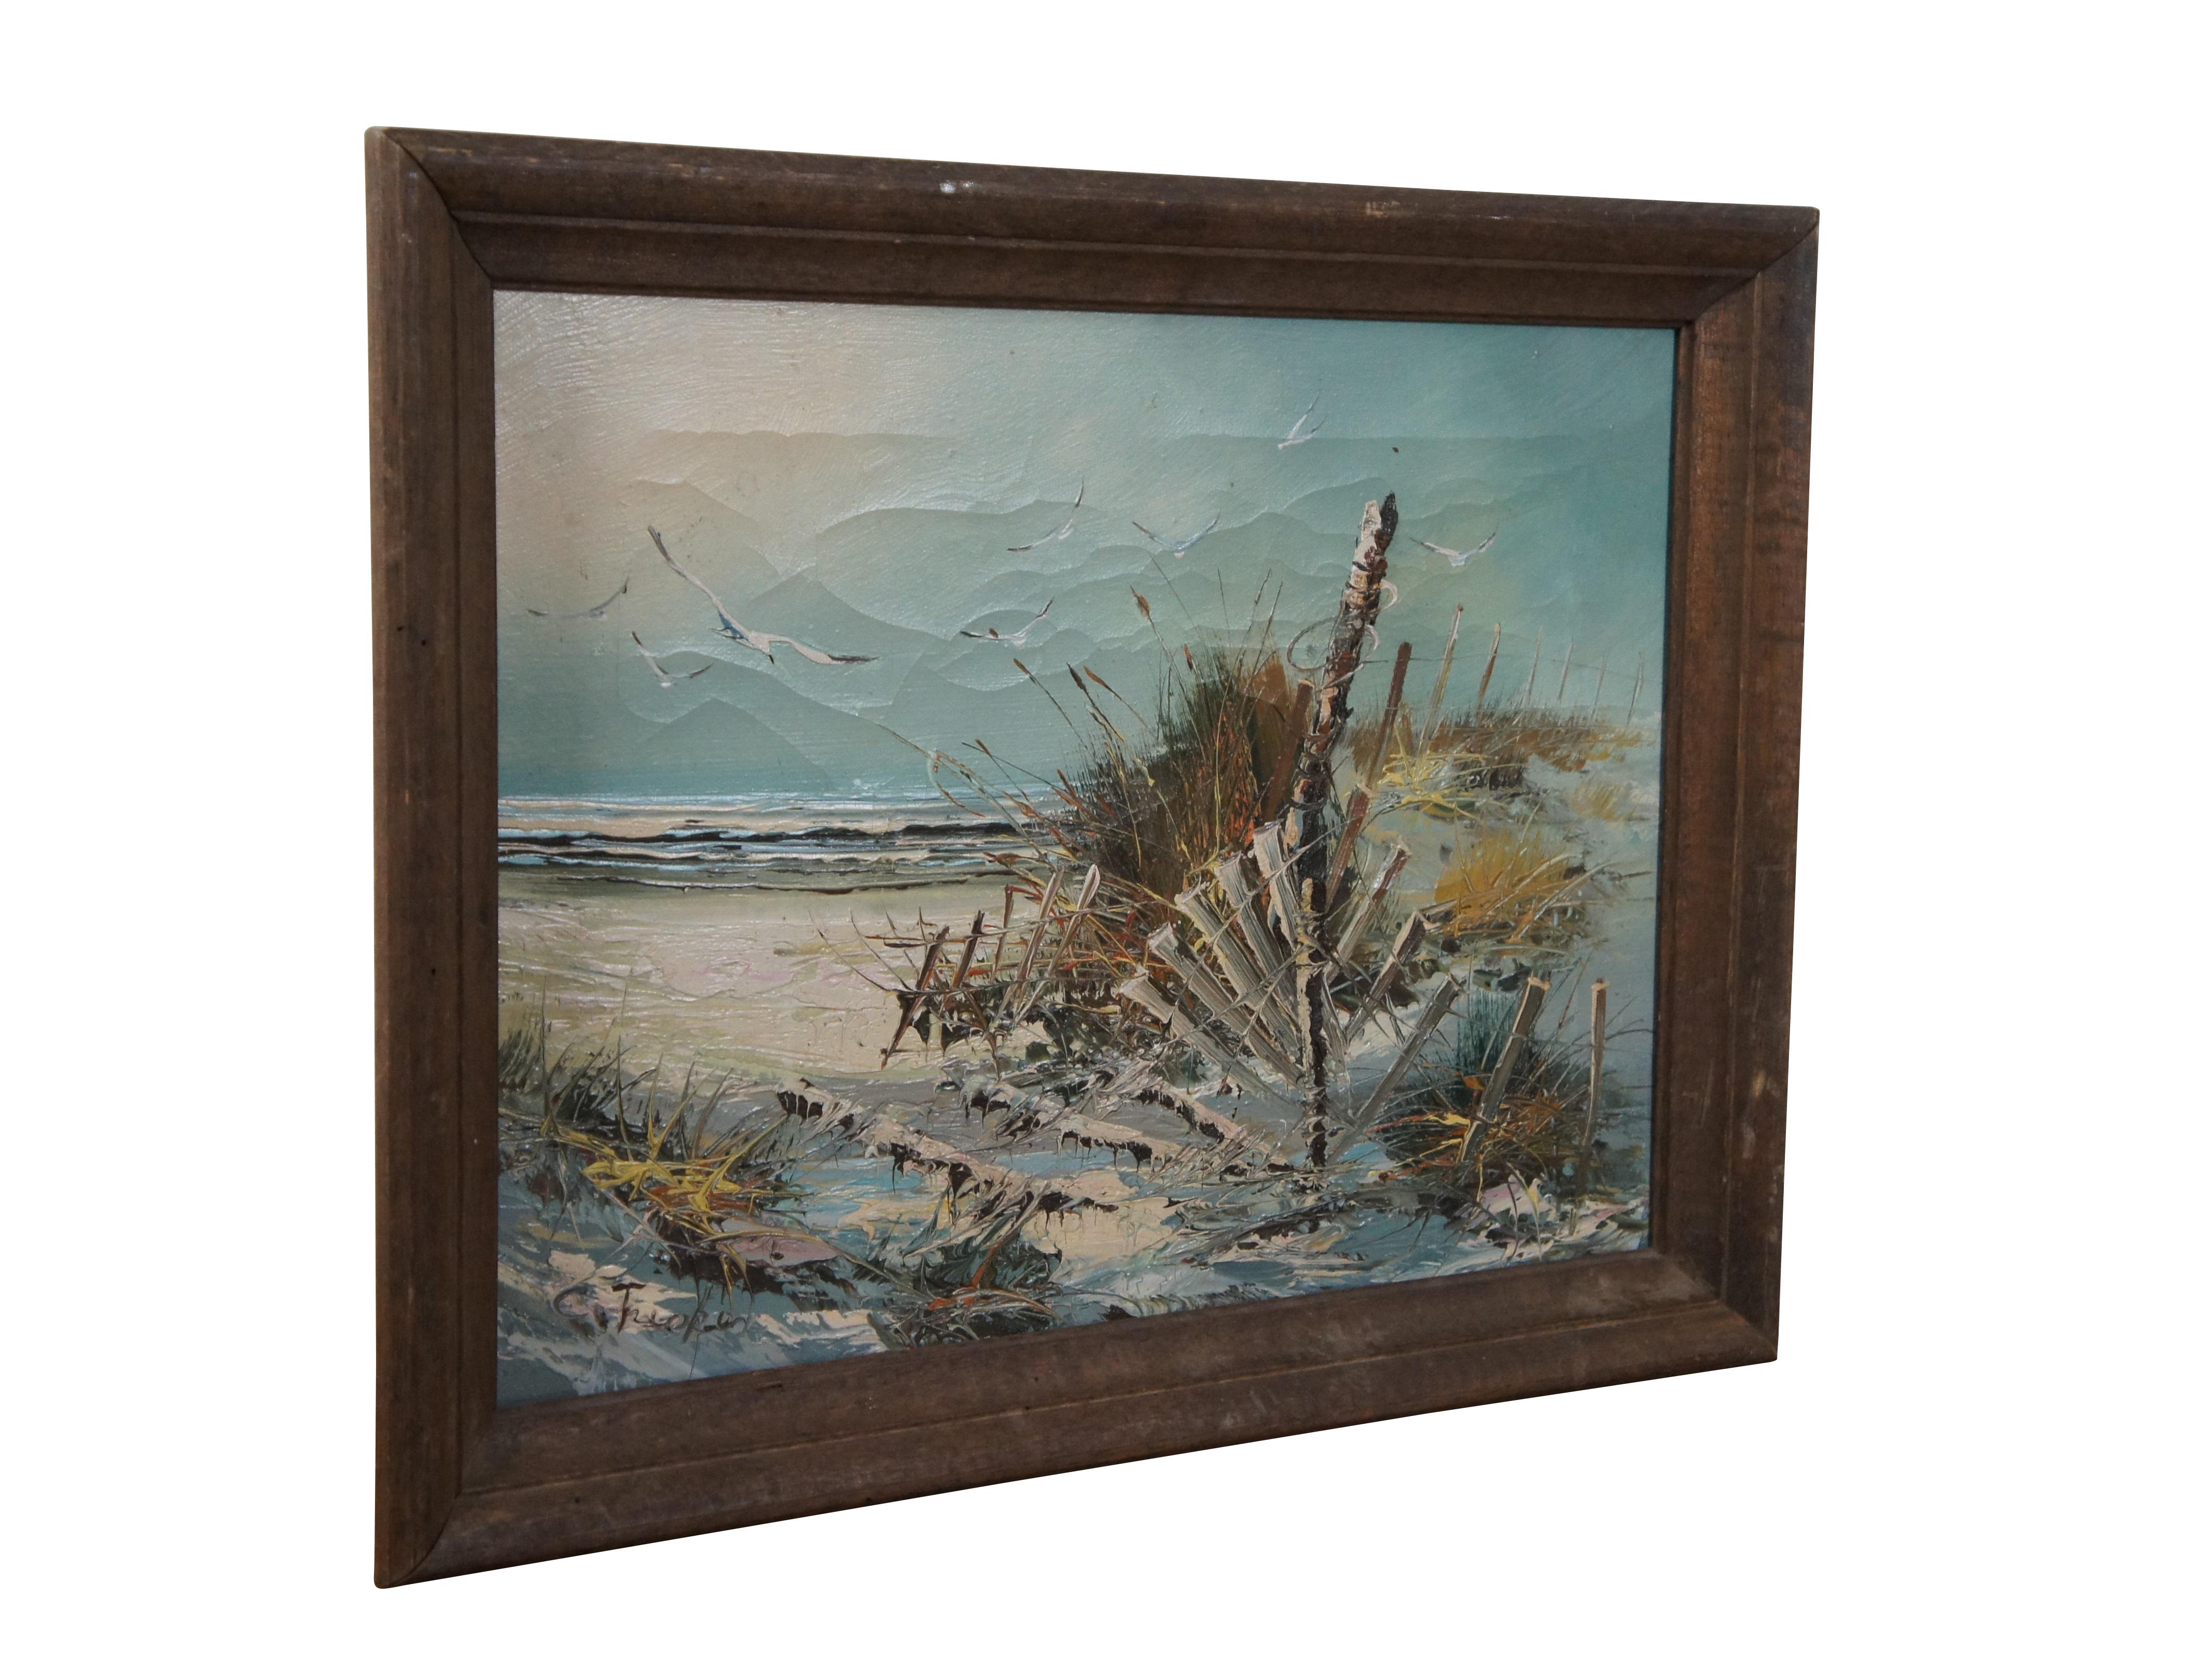 Peinture expressionniste de paysage côtier à l'huile sur toile d'époque représentant une plage de sable blanc avec une clôture délabrée perchée sur une dune herbeuse et des mouettes volant au-dessus. Signé dans le coin inférieur gauche. Encadré dans